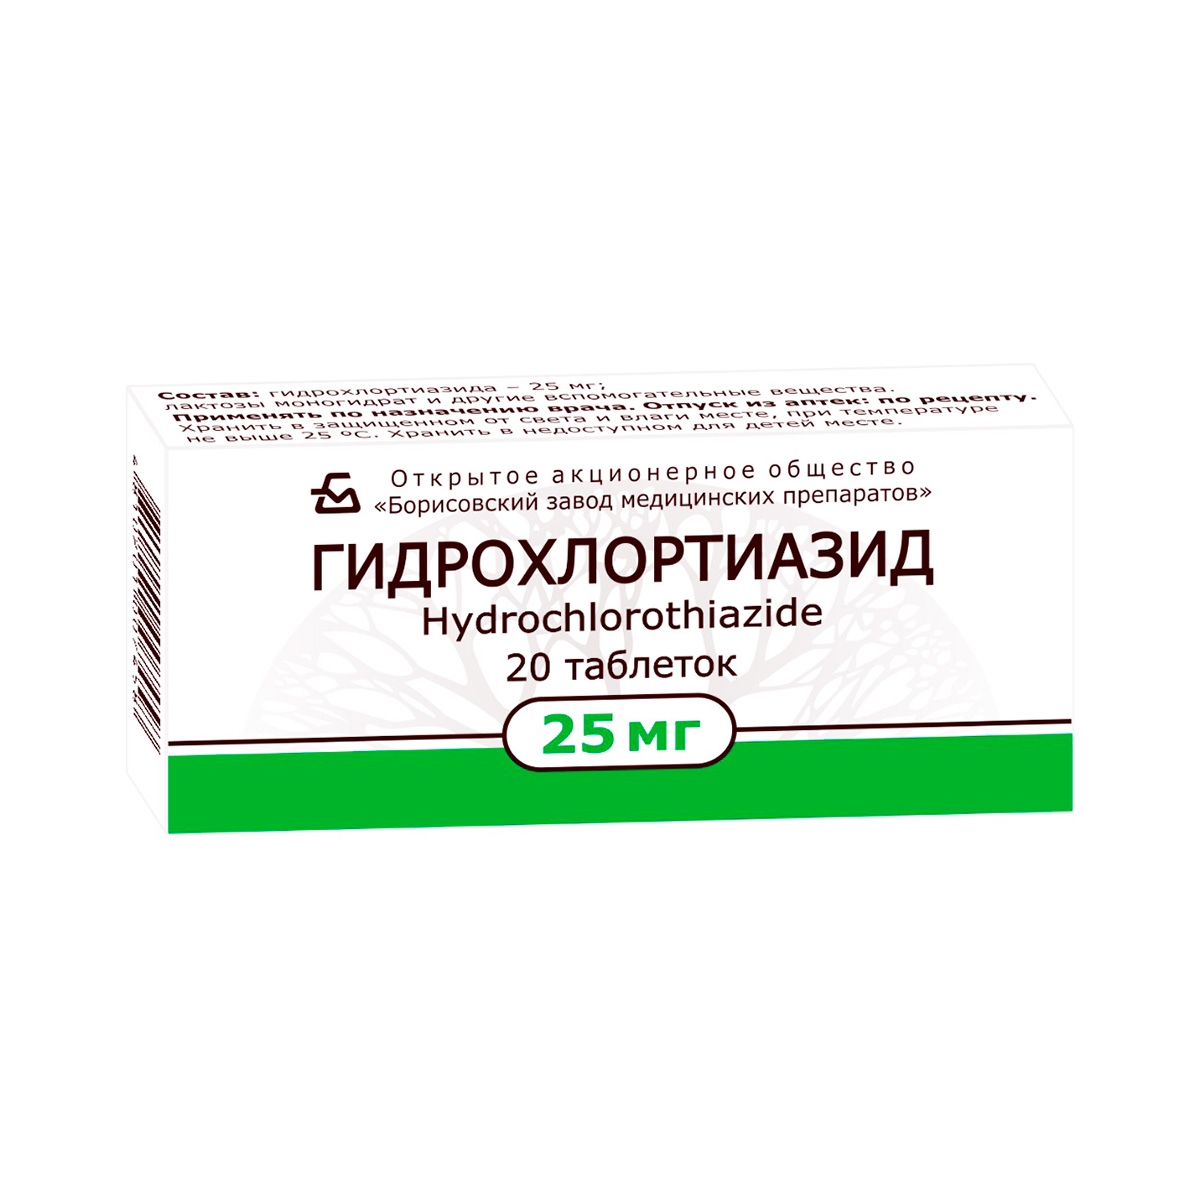 Гидрохлортиазид 25 мг таблетки 20 шт